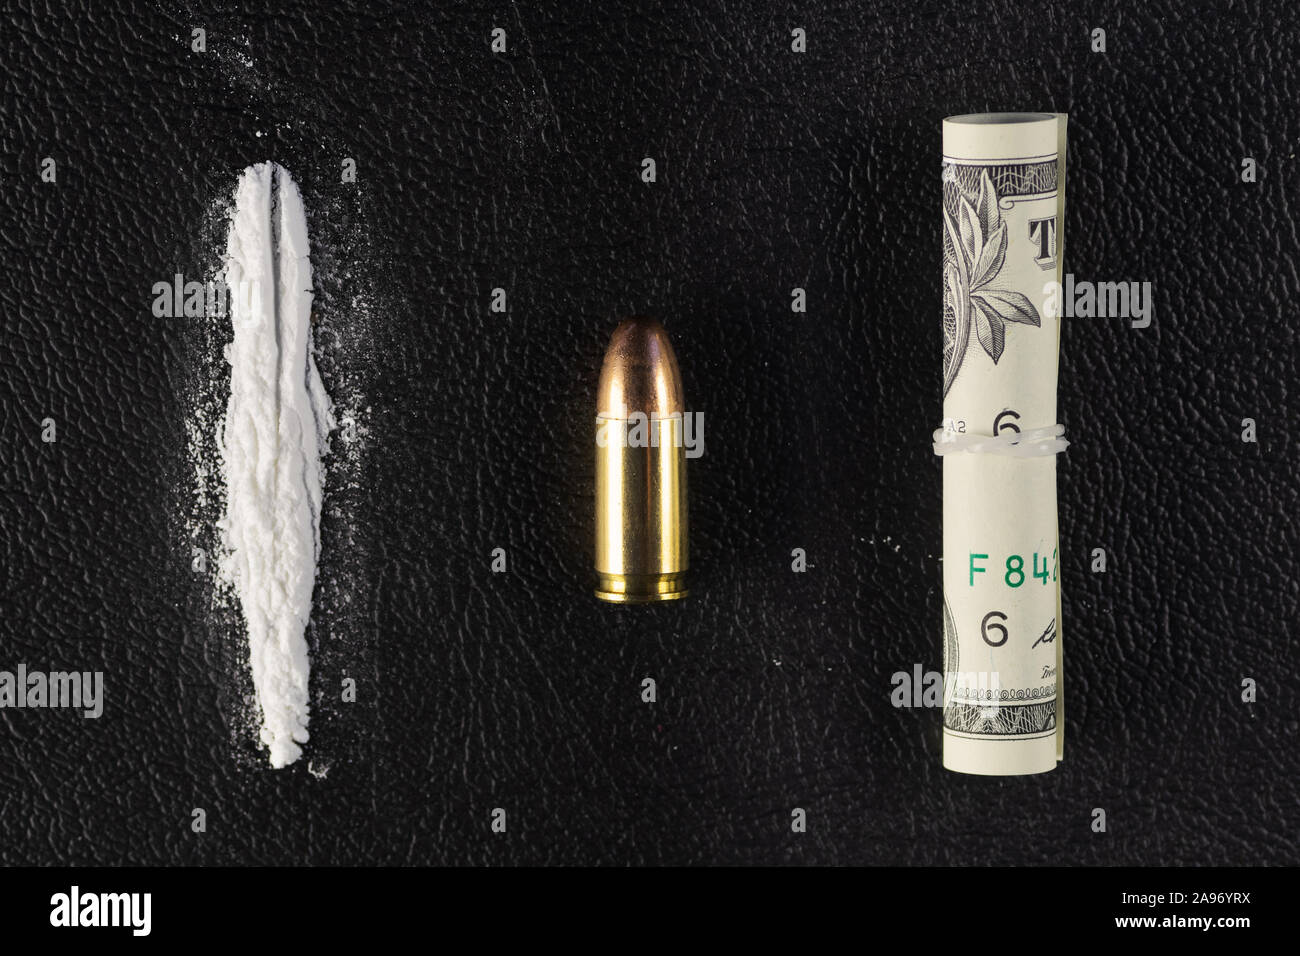 Une ligne de cocaïne en poudre, un seul 9 mm bullet et dollar bill faire défiler. Maquette conceptuelle de drogue illégale, la traite, la guerre contre la drogue. Banque D'Images